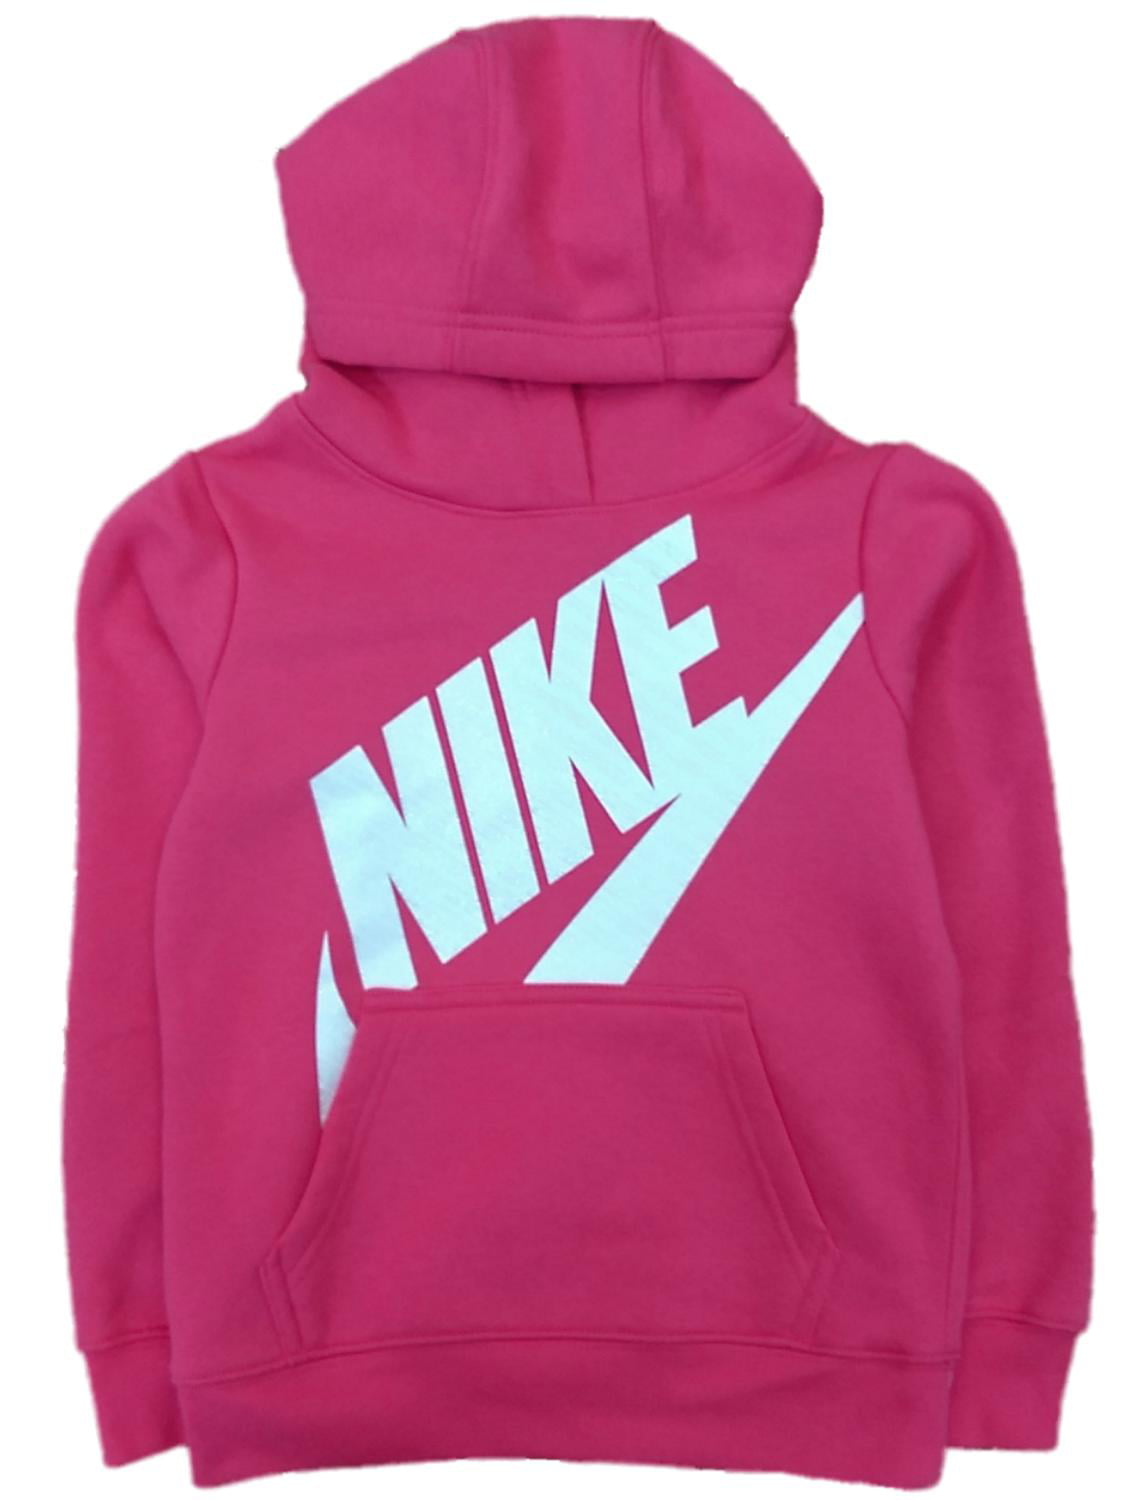 hot pink hoodie nike